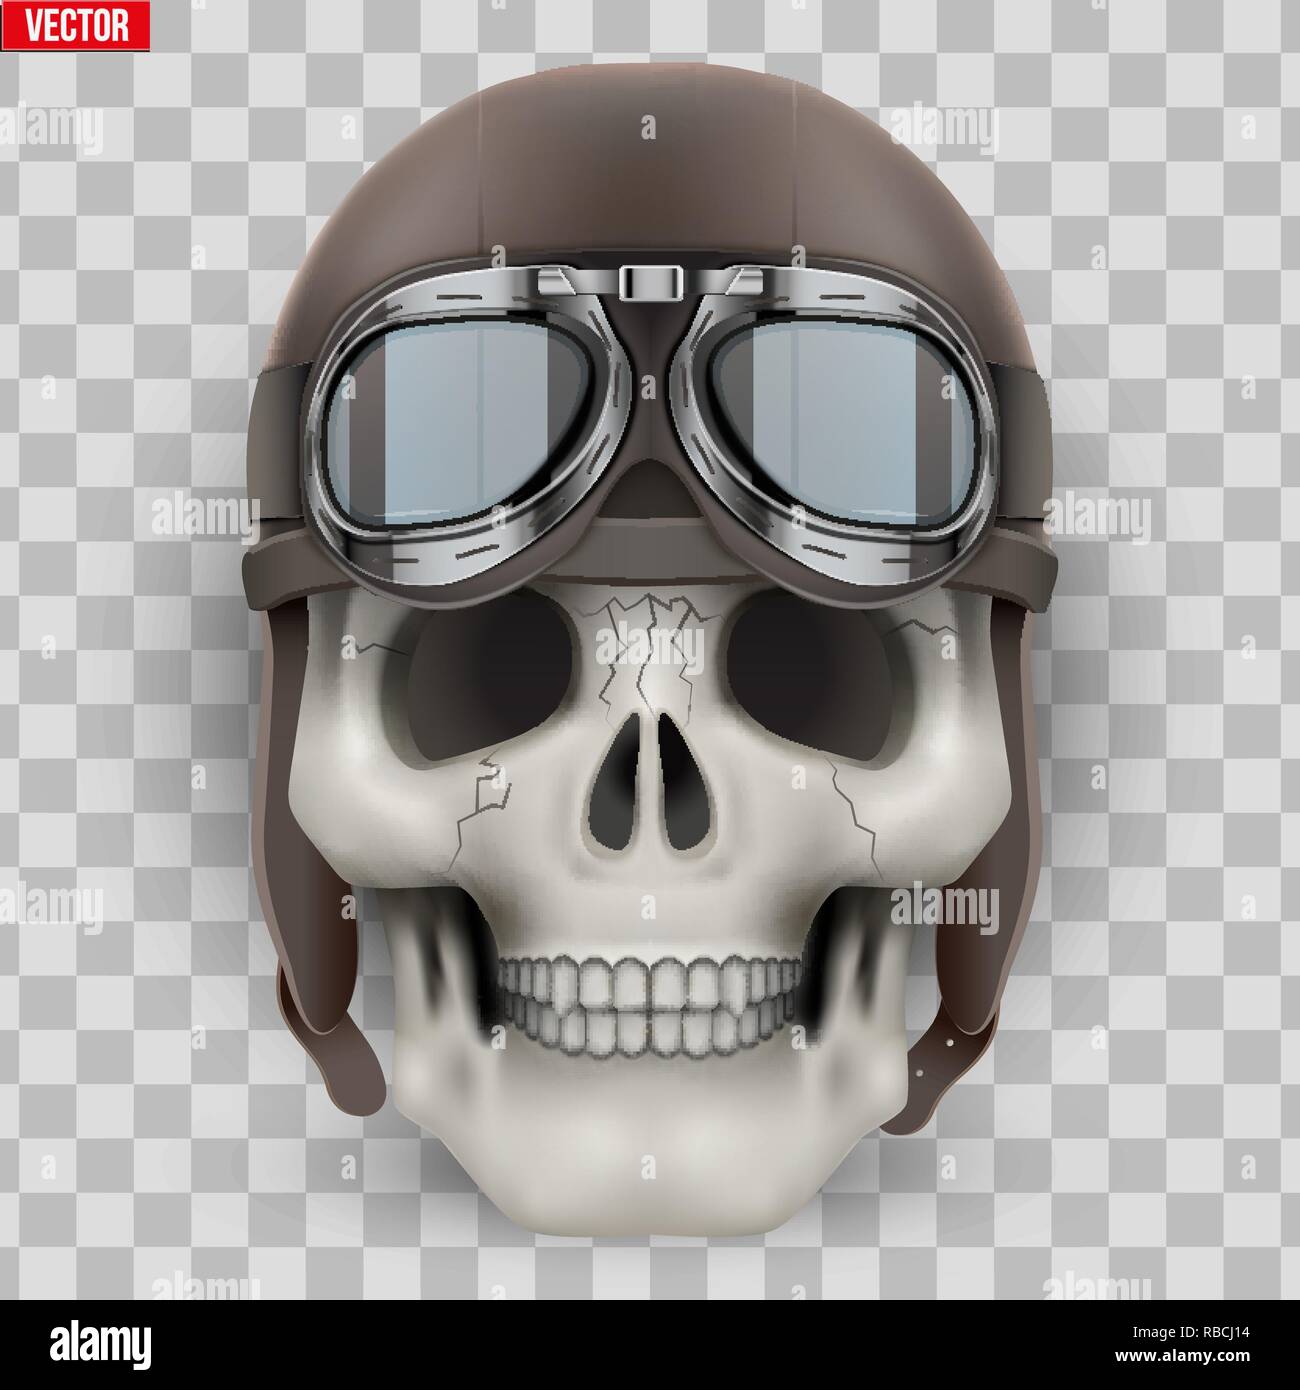 Human skull with retro aviator or biker helmet. Stock Vector